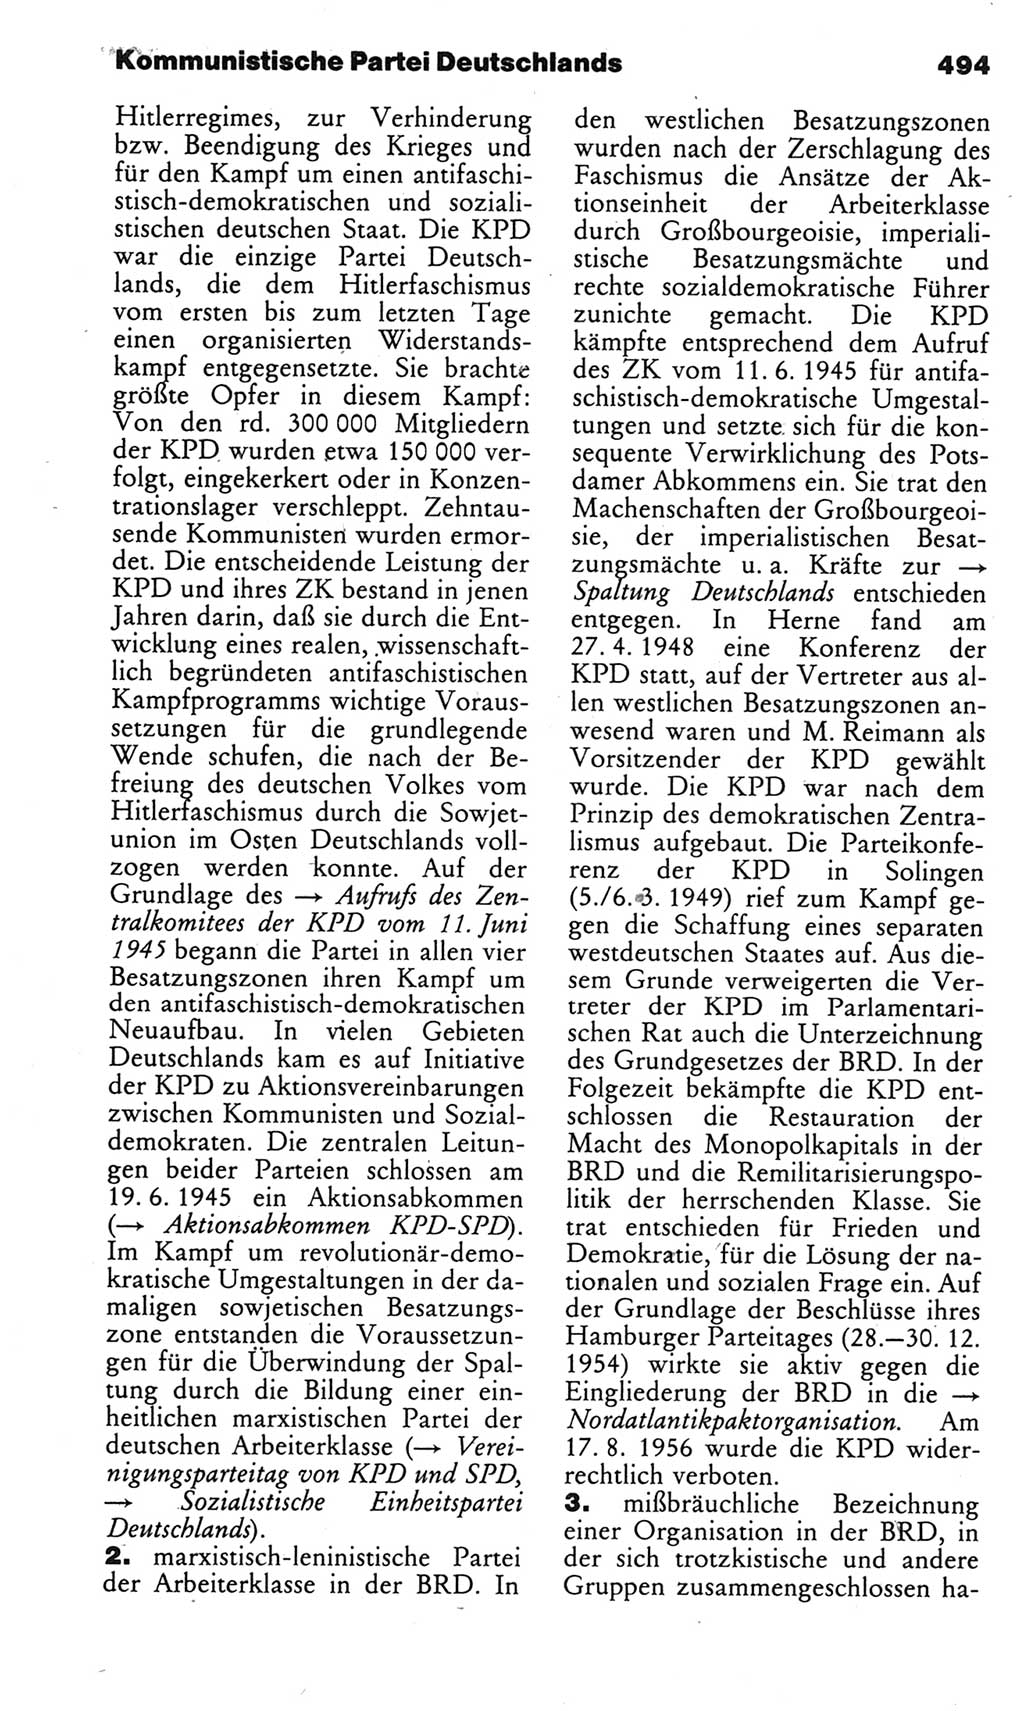 Kleines politisches Wörterbuch [Deutsche Demokratische Republik (DDR)] 1983, Seite 494 (Kl. pol. Wb. DDR 1983, S. 494)